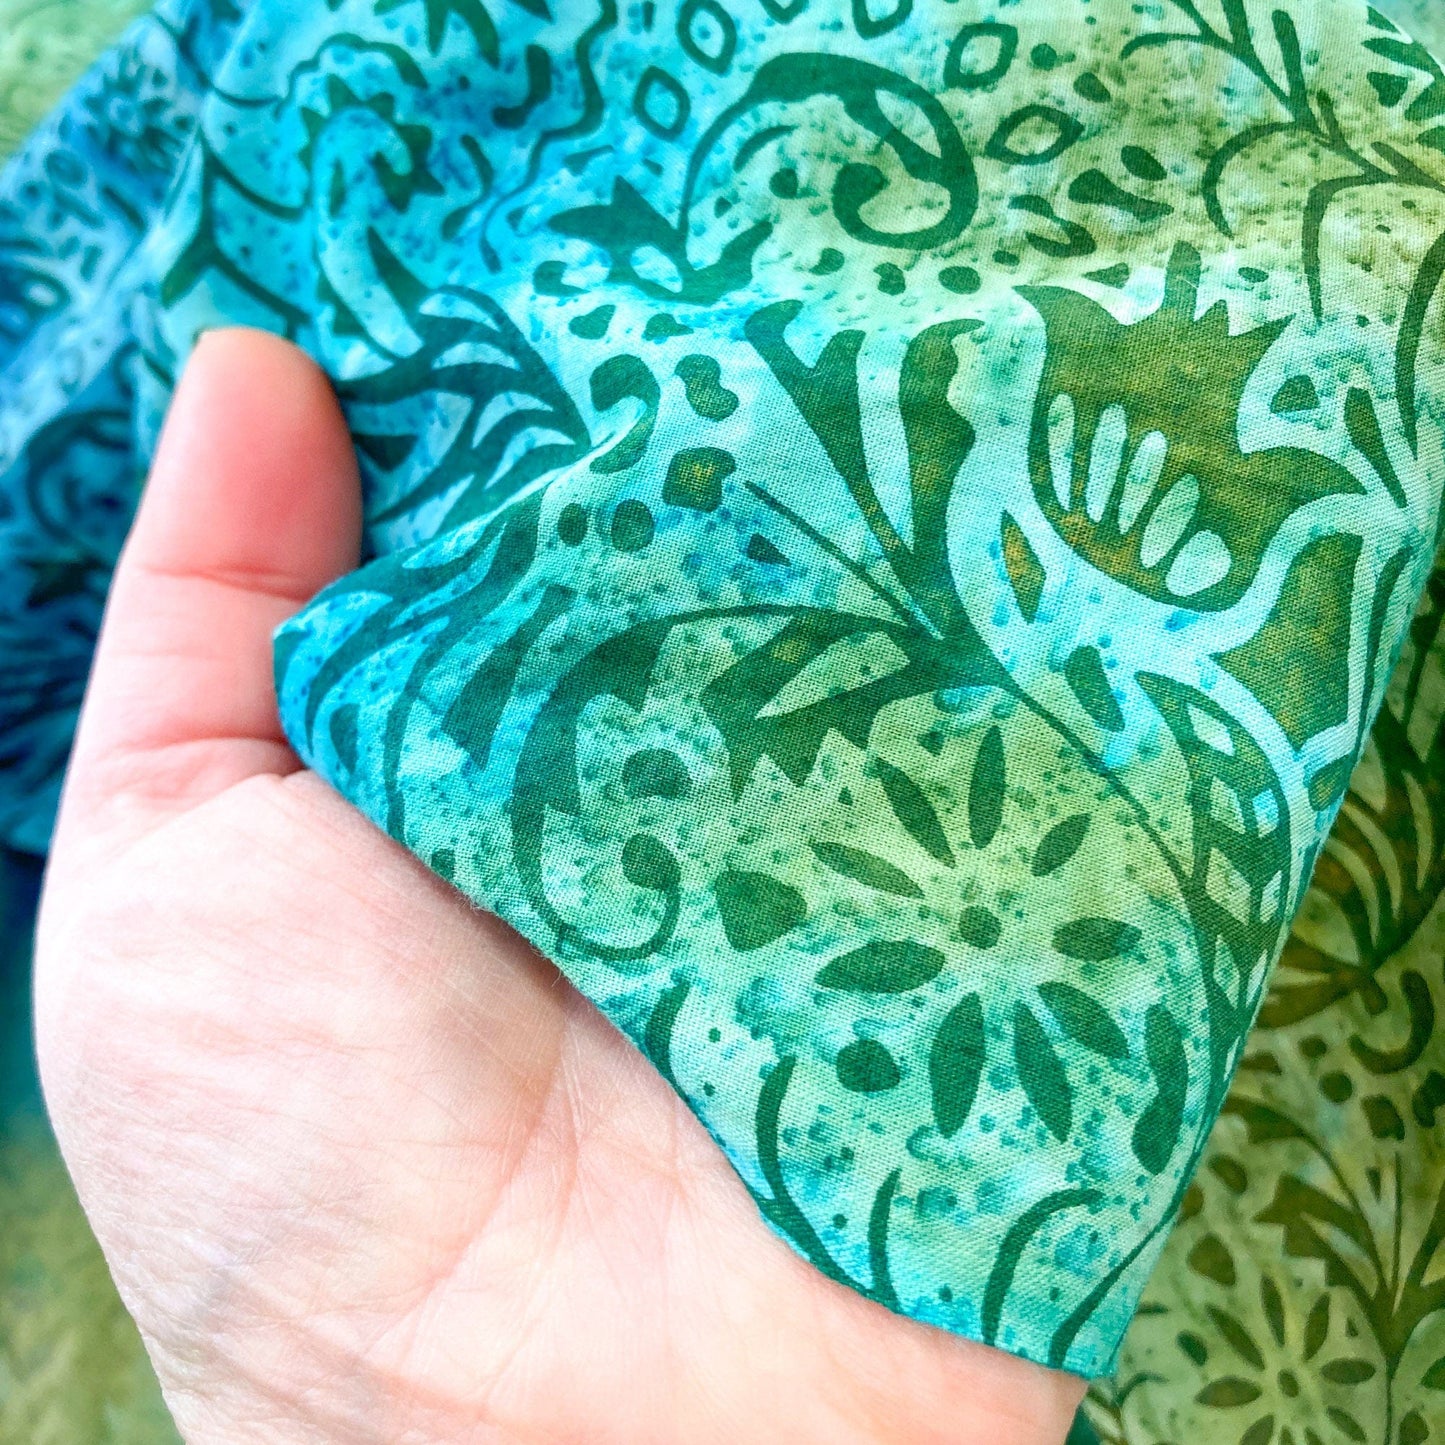 Cotton Batik with Aqua and Green Floral Design